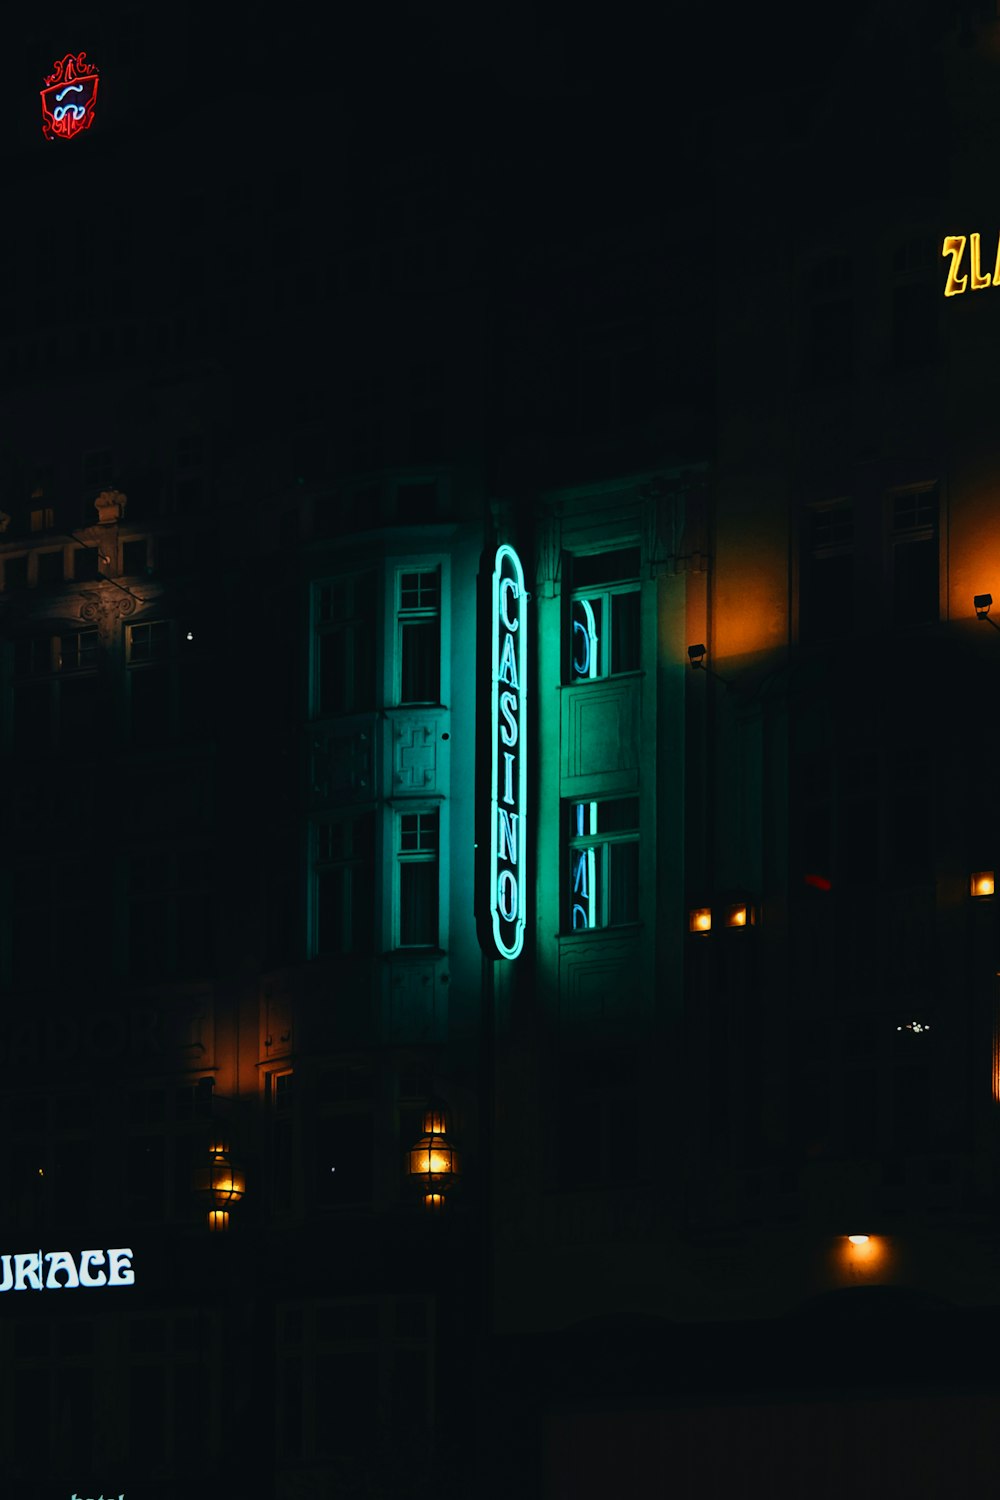 Un bâtiment avec une enseigne au néon éclairée la nuit